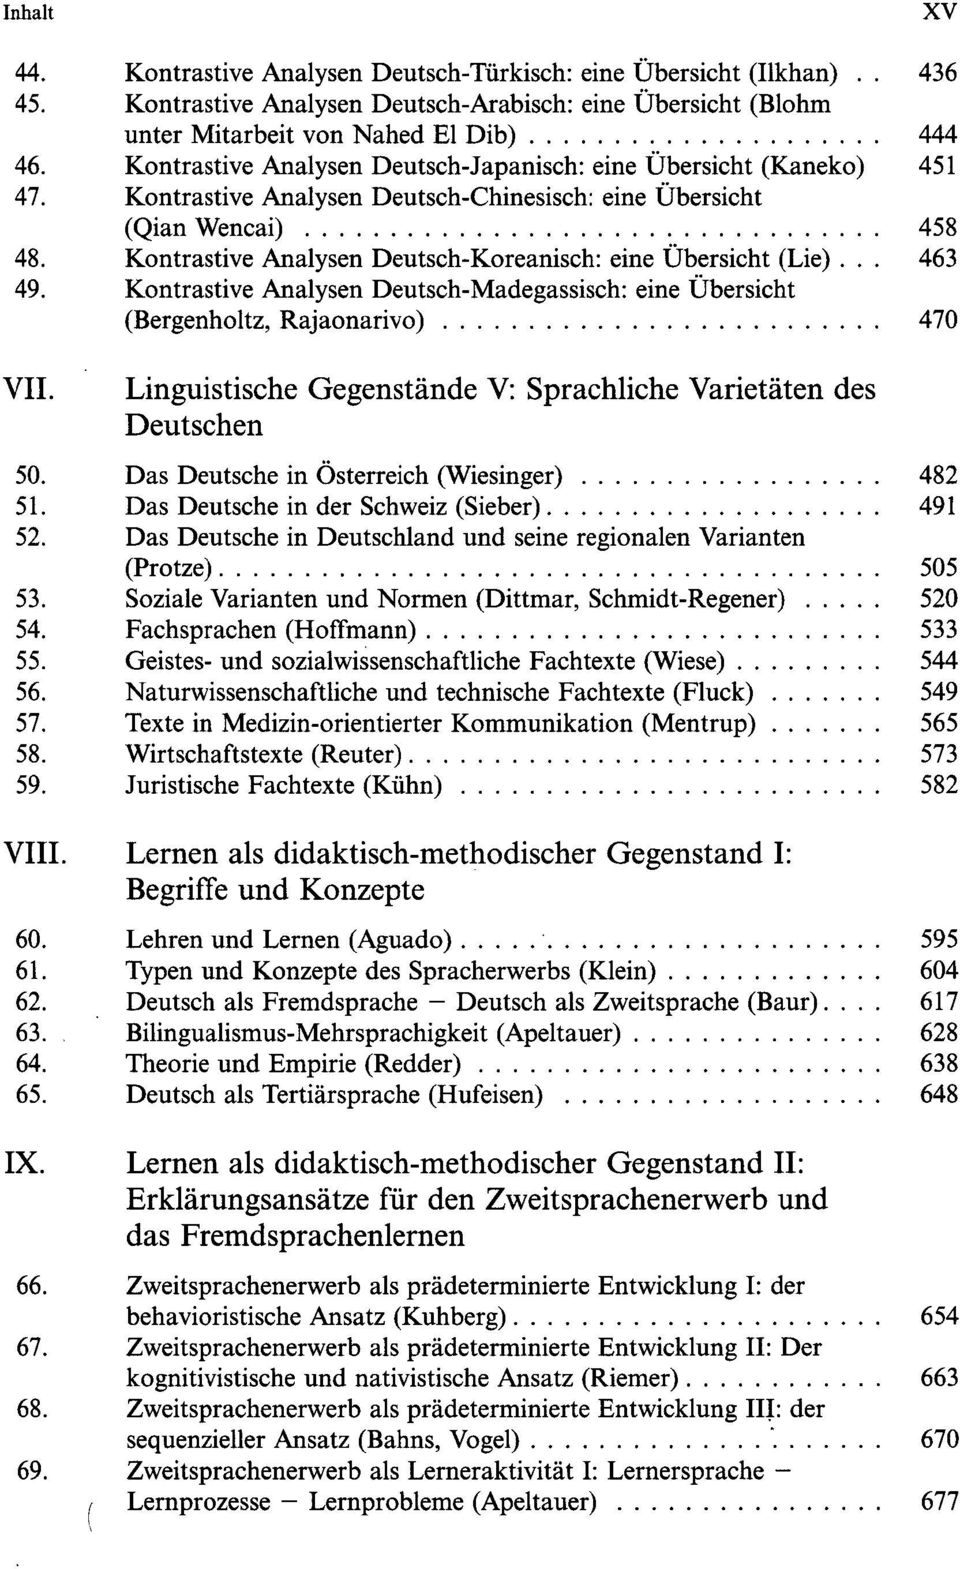 Kontrastive Analysen Deutsch-Koreanisch: eine Übersicht (Lie)... 463 49. Kontrastive Analysen Deutsch-Madegassisch: eine Übersicht (Bergenholtz, Rajaonarivo) 470 VII.